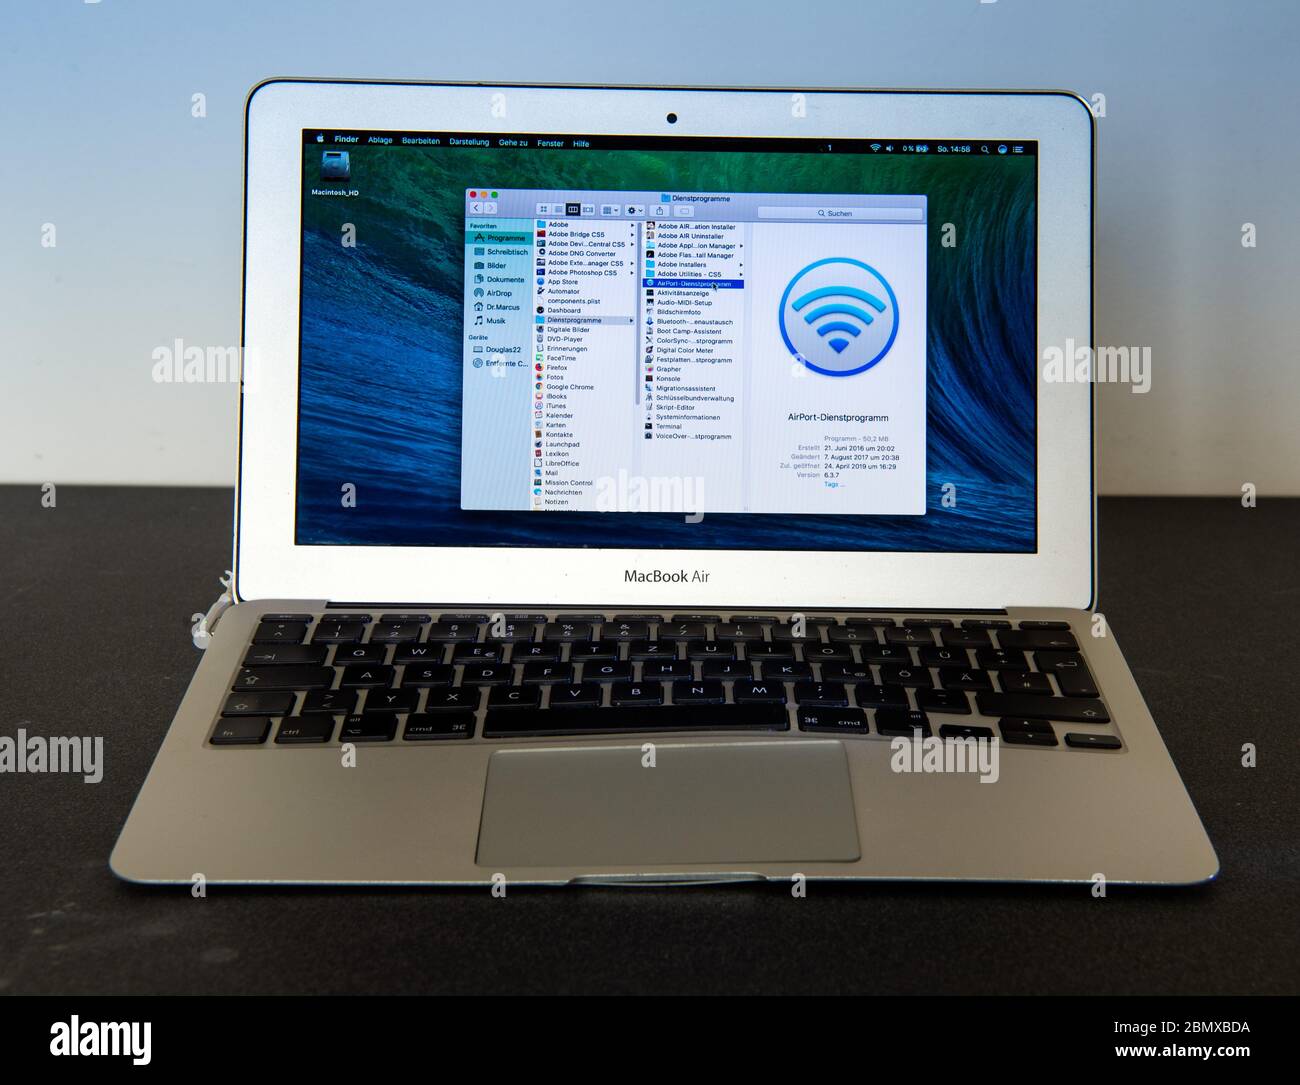 26 avril 2020, Berlin : un MacBook Air (année de fabrication 2011) avec un  écran de 11 pouces se tient sur une table. La batterie gonflée a séparé le  trackpad et le